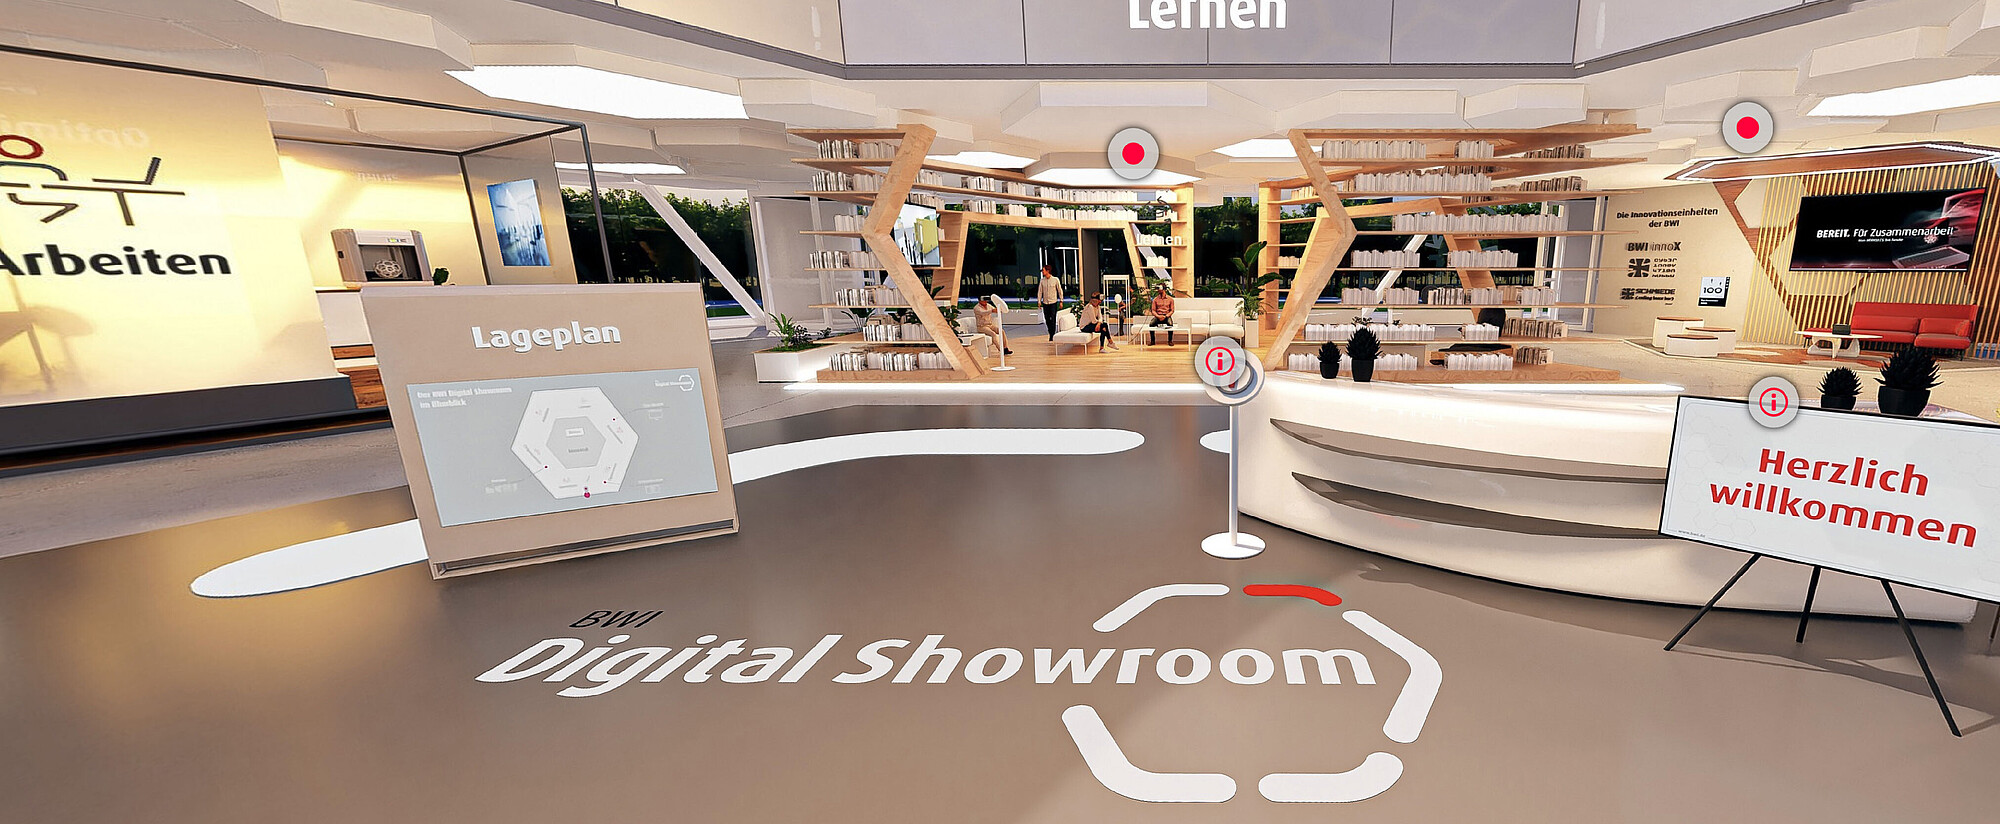 Digital und innovativ: BWI Digital Showroom öffnet die Türen für Besucher*innen